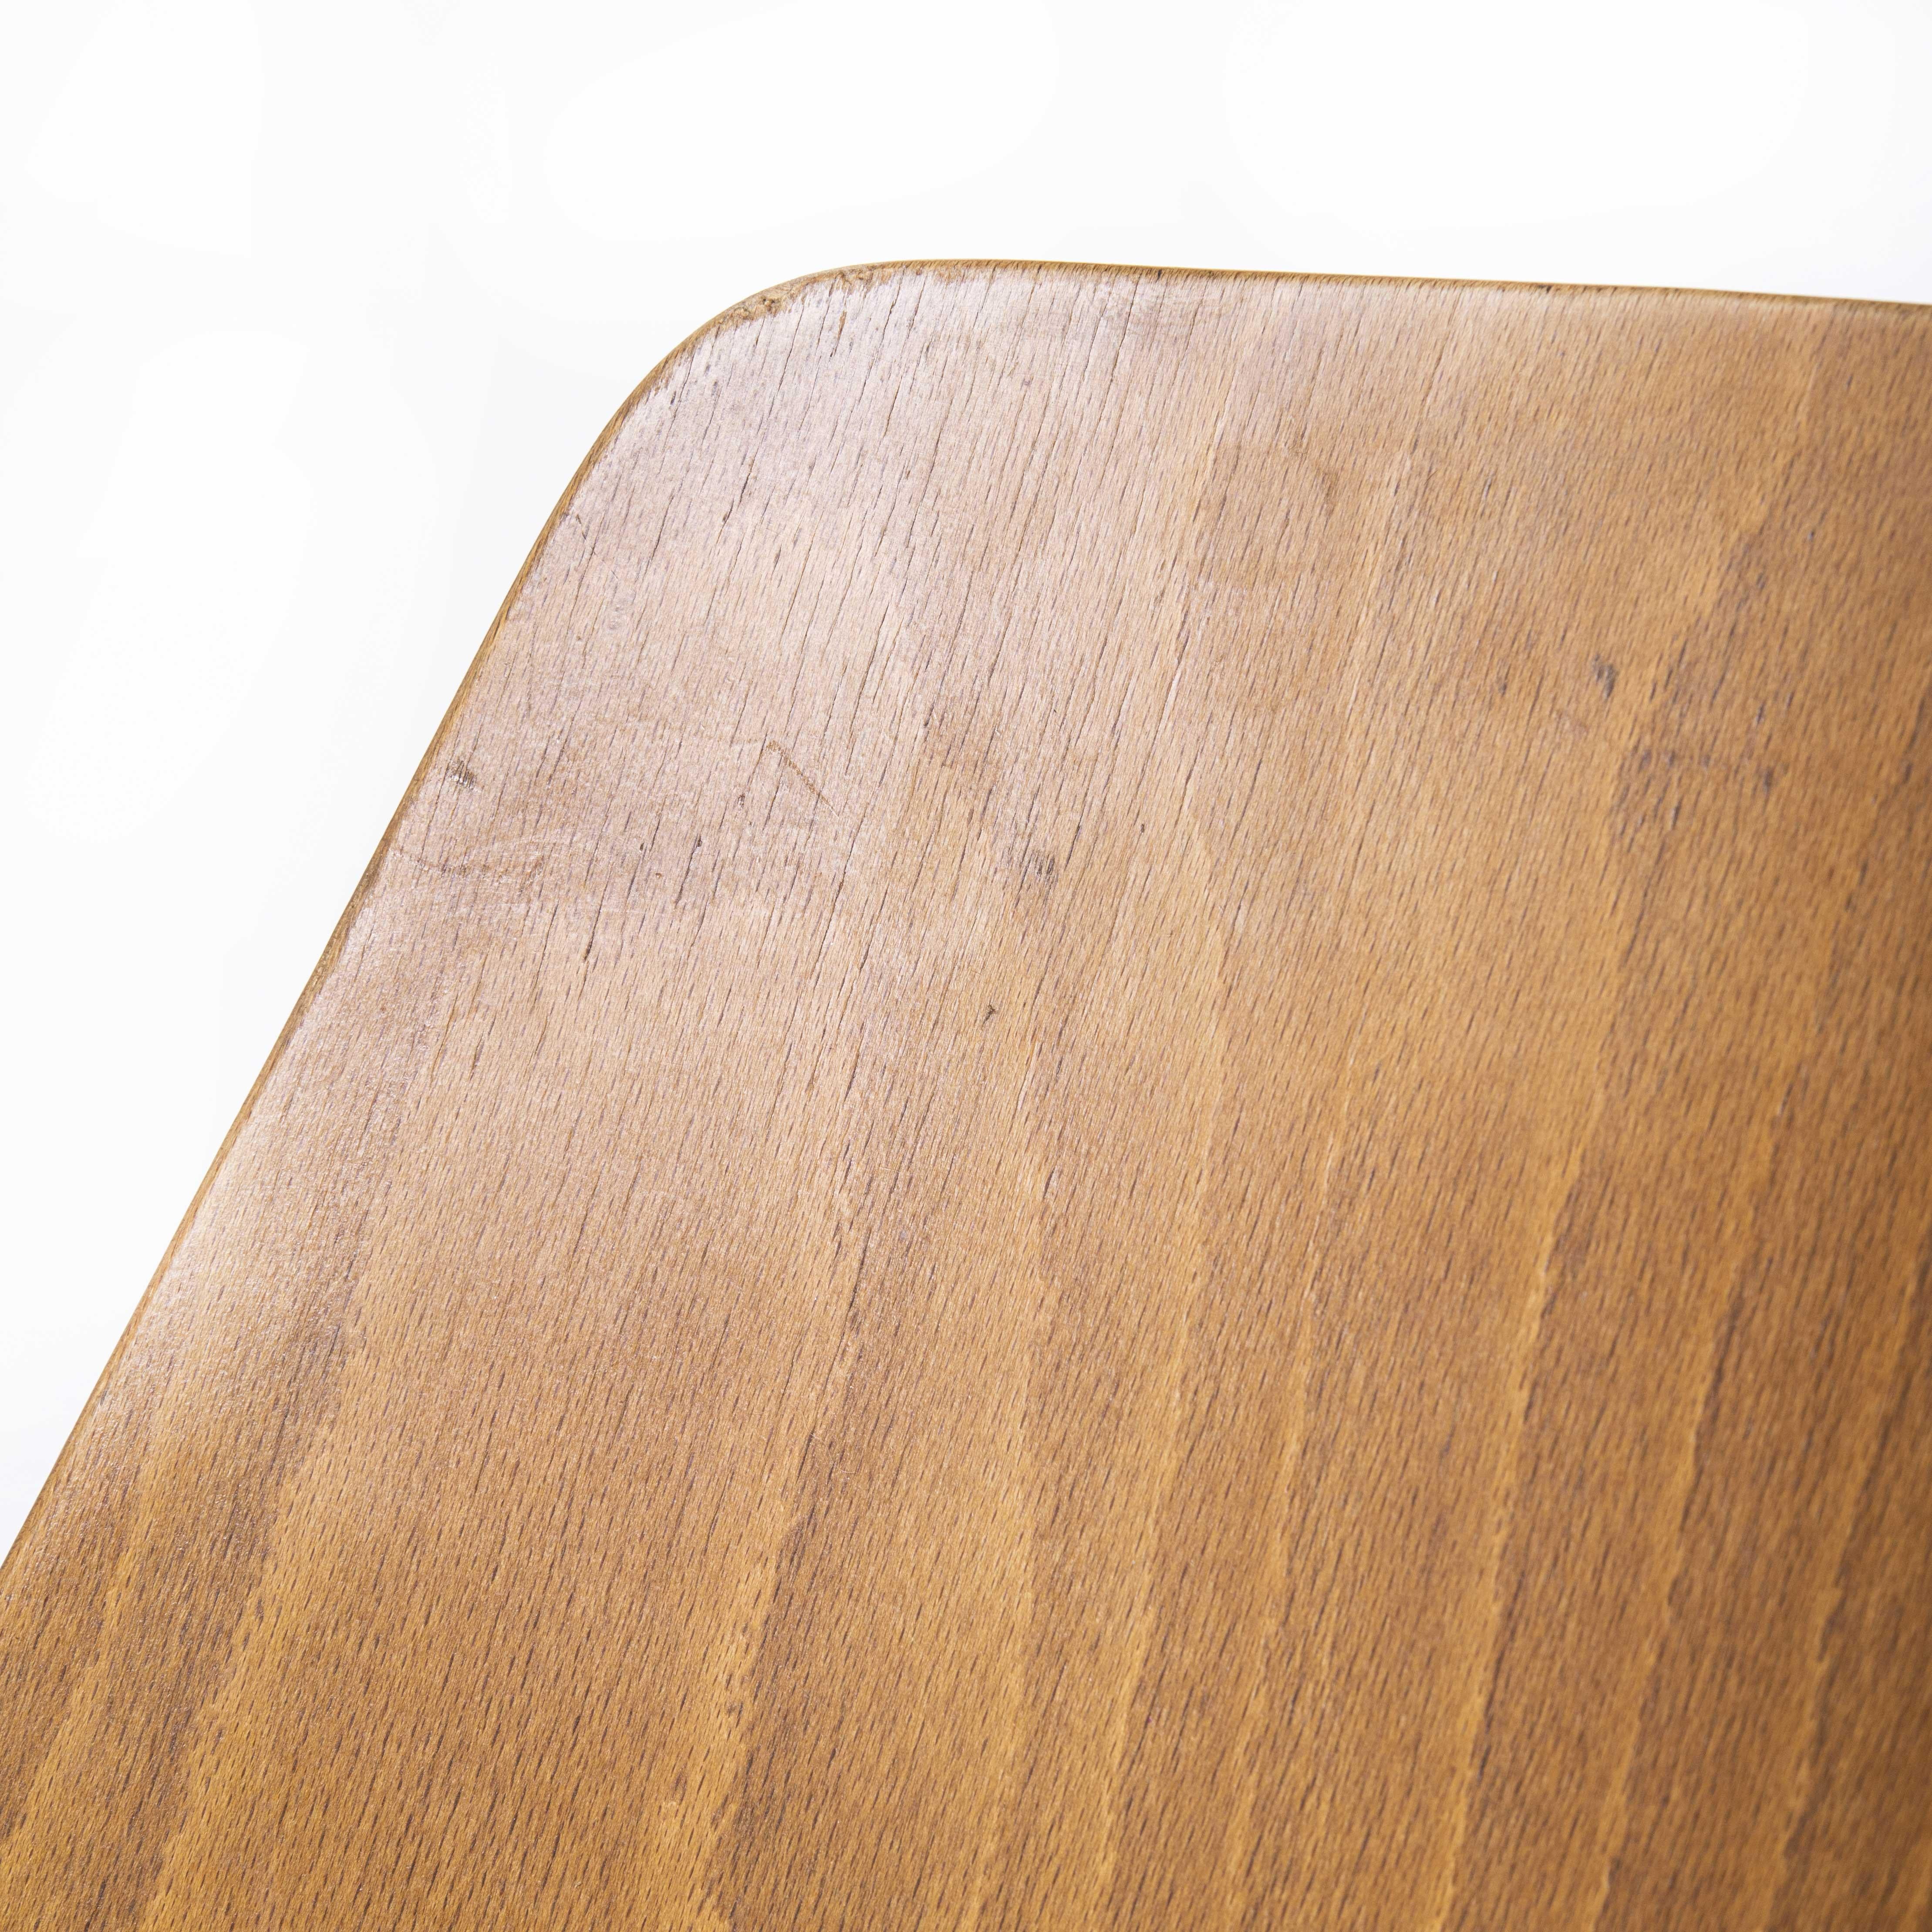 Chaise mondor en bois de hêtre Baumann des années 1960 - ensemble de six pièces

Chaise mondor en bois de hêtre Baumann des années 1960 - ensemble de six. Chaise bistro classique en hêtre fabriquée en France par le fabricant Joamin Baumann.